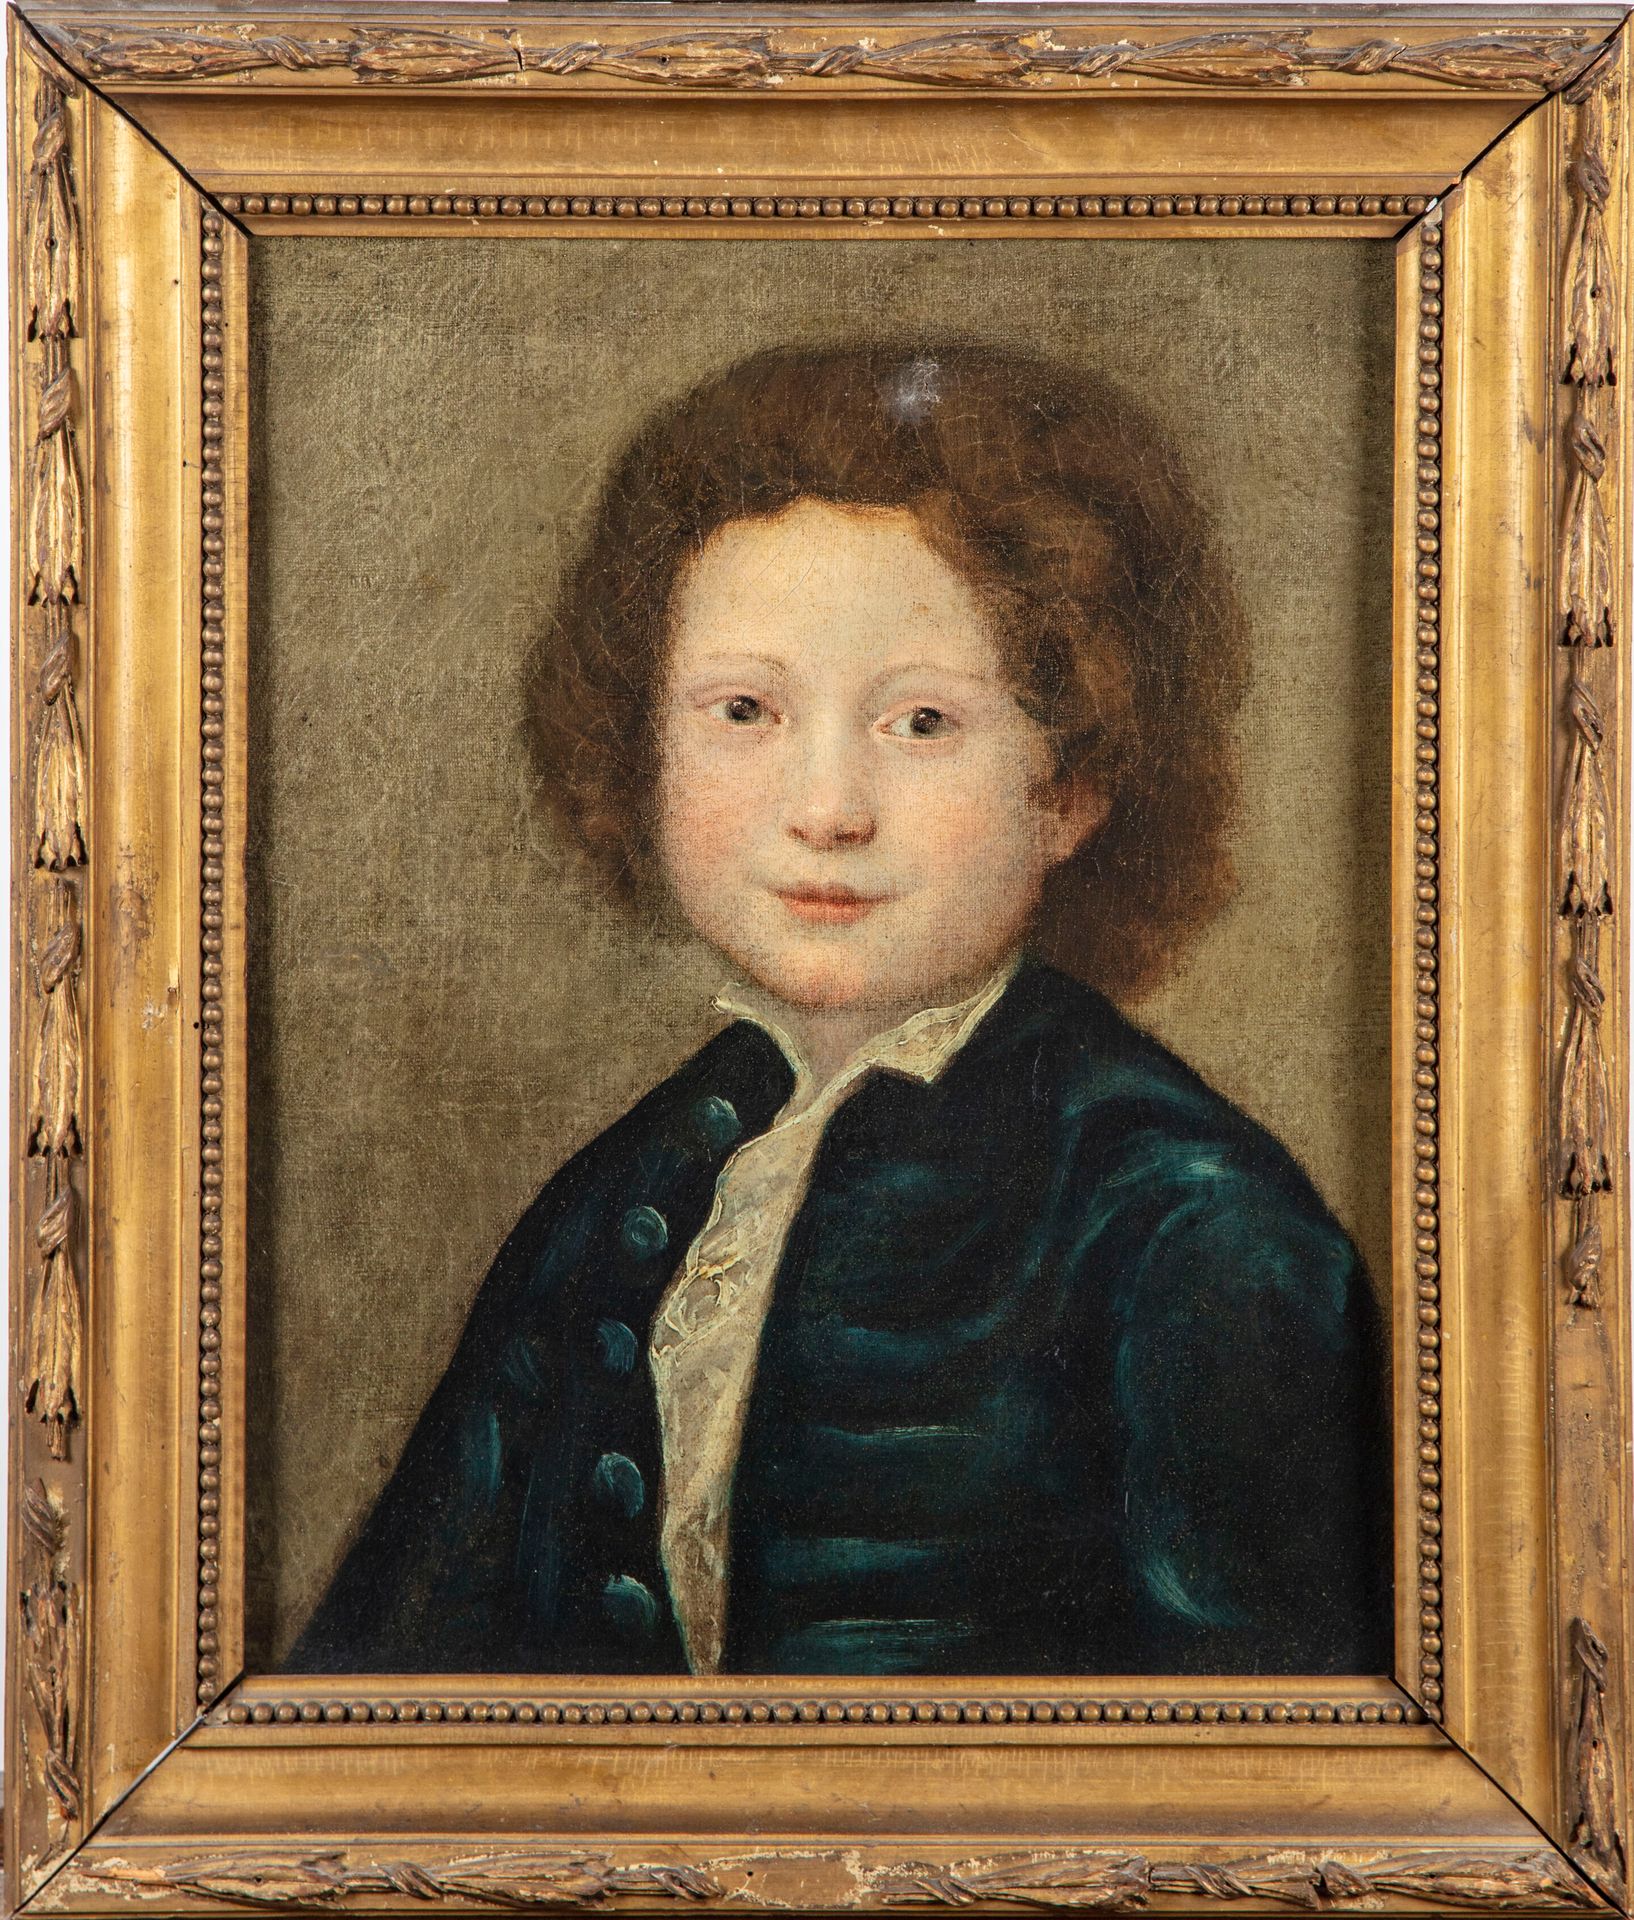 Null ECOLE ITALIENNE XIXe

Portrait de jeune garçon dans le style du XVIIIe

Hui&hellip;